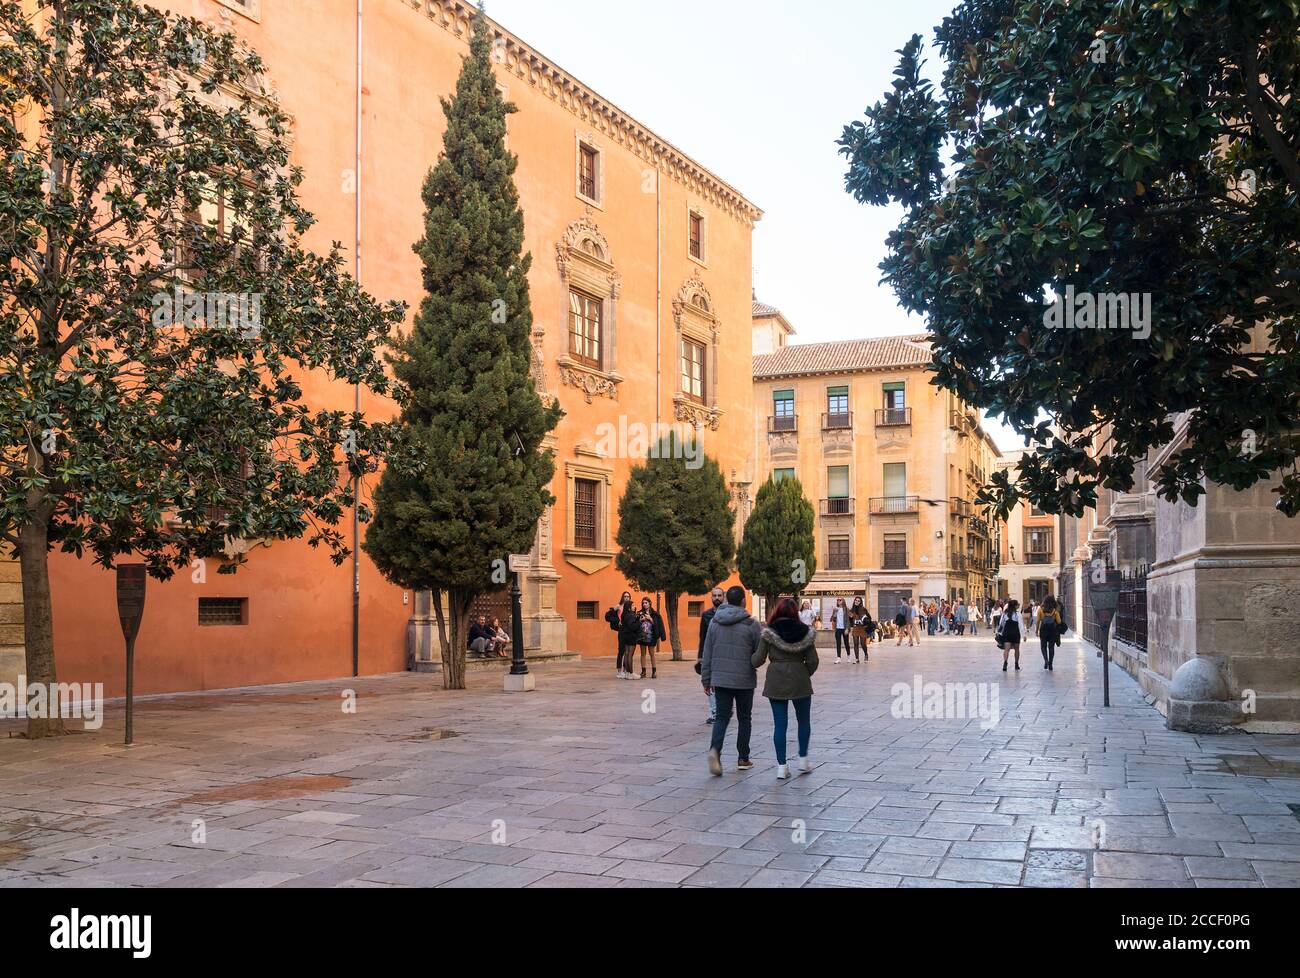 Granada (España), casco antiguo, Plaza de Alonso Cano Fotografía de stock -  Alamy